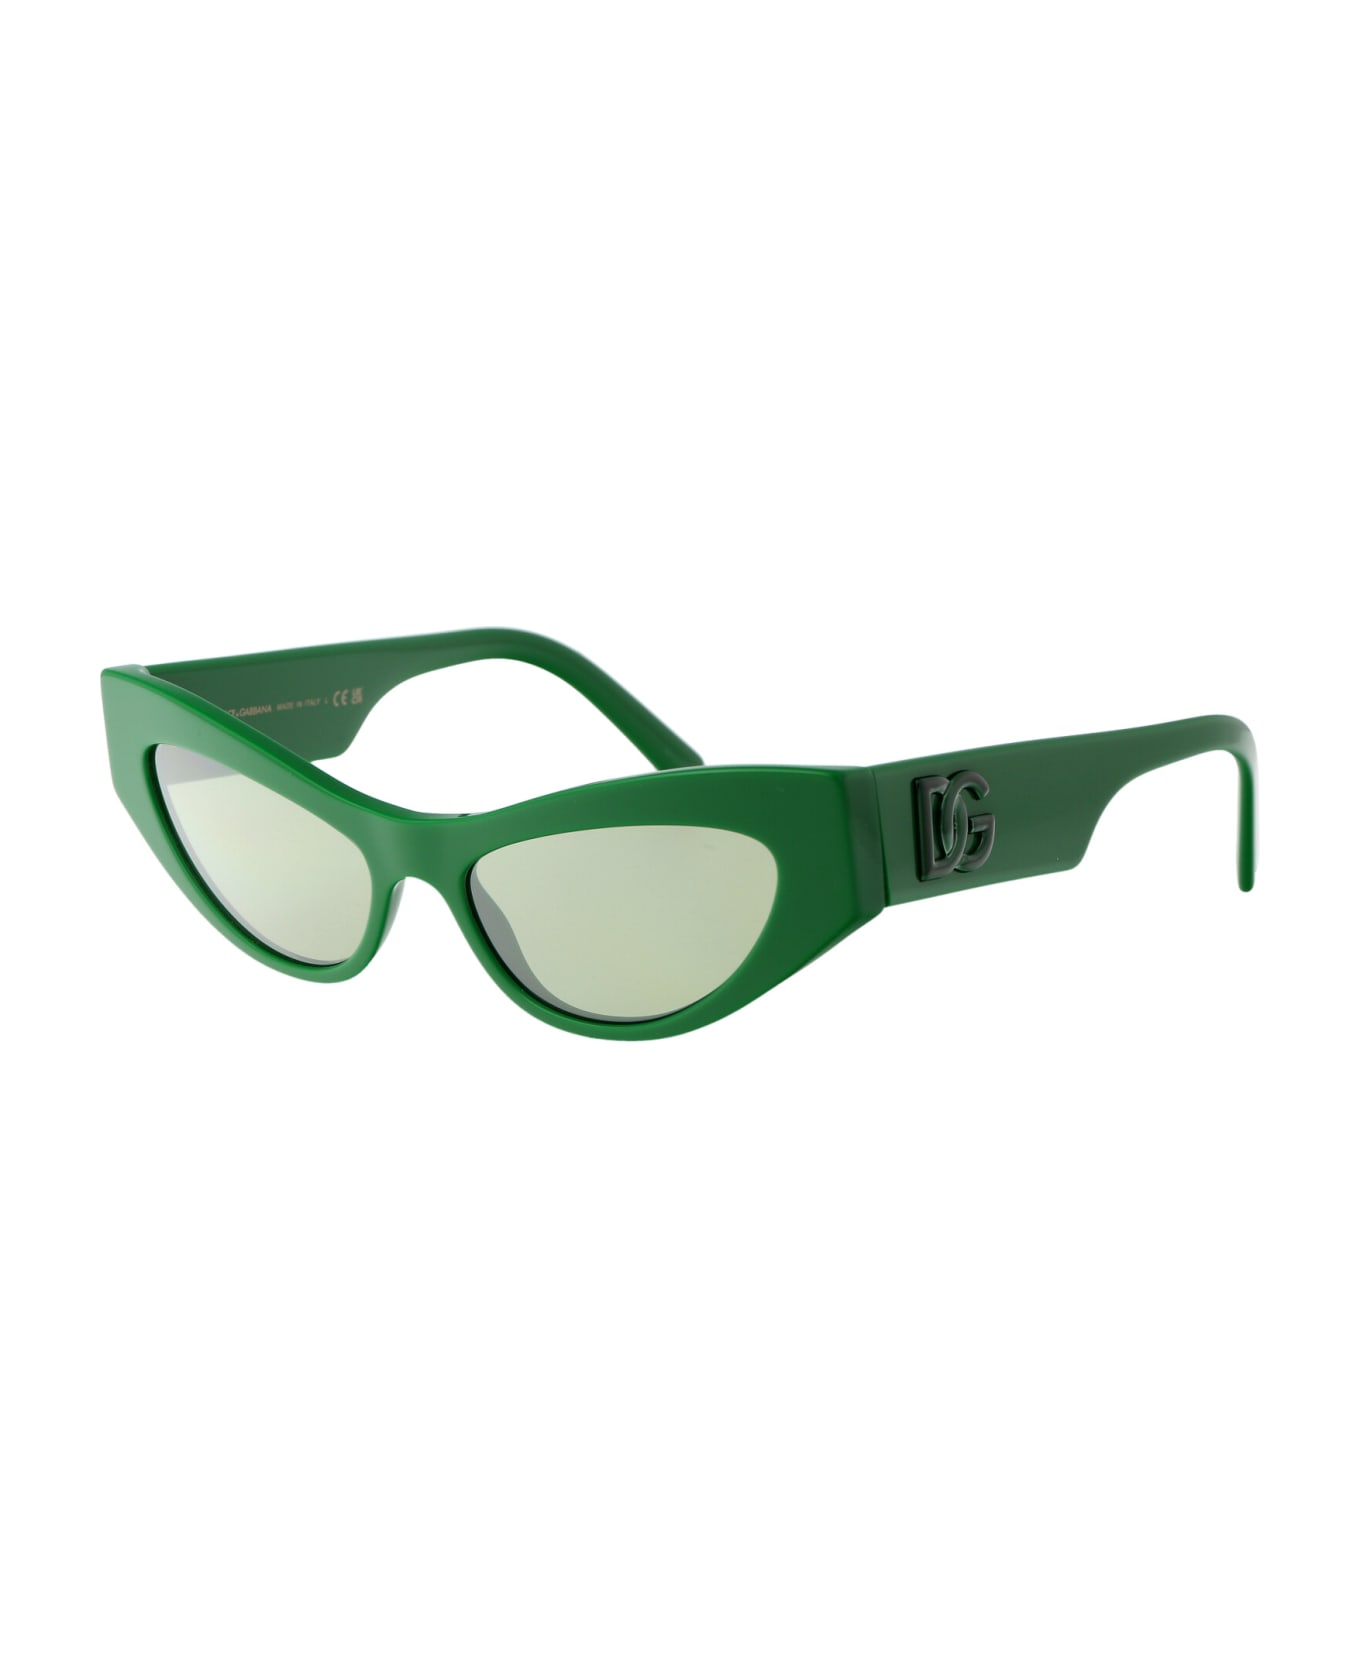 Dolce & Gabbana Eyewear 0dg4450 Sunglasses - 331152 Green